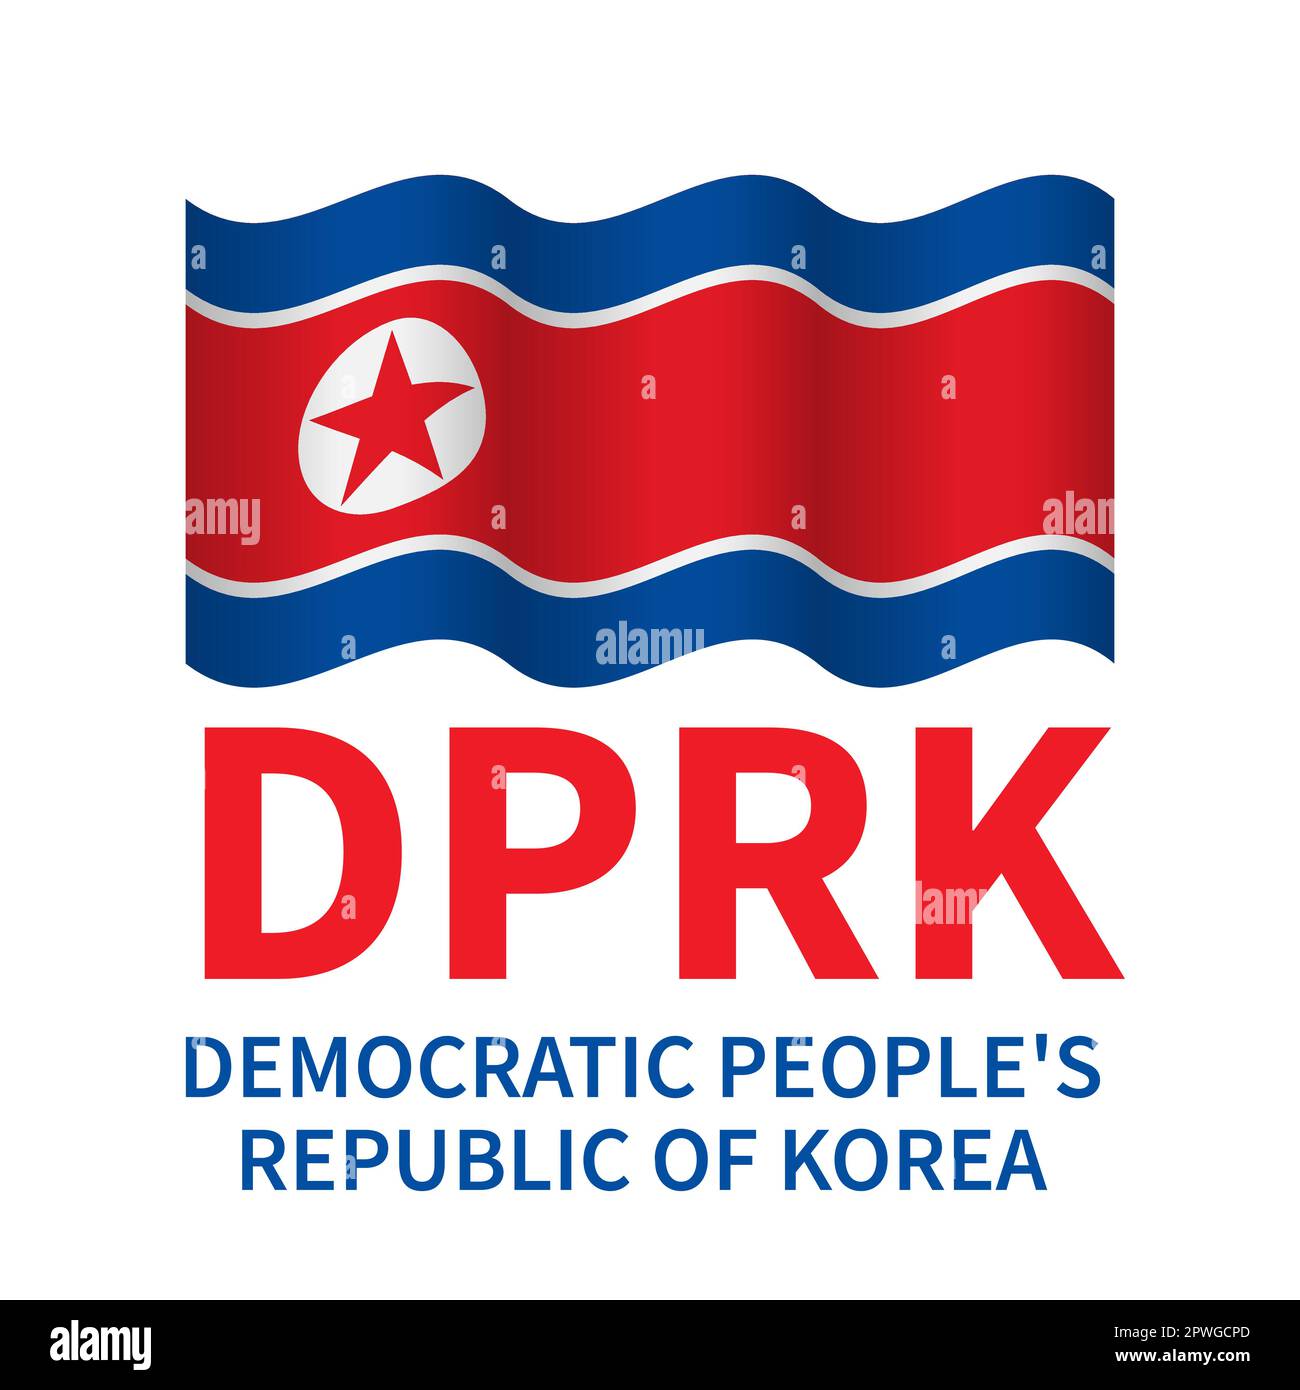 Bandiera della Repubblica popolare Democratica di Corea DPRK isolato su bianco. Modello vettoriale per banner, poster, volantini, ecc. Illustrazione Vettoriale